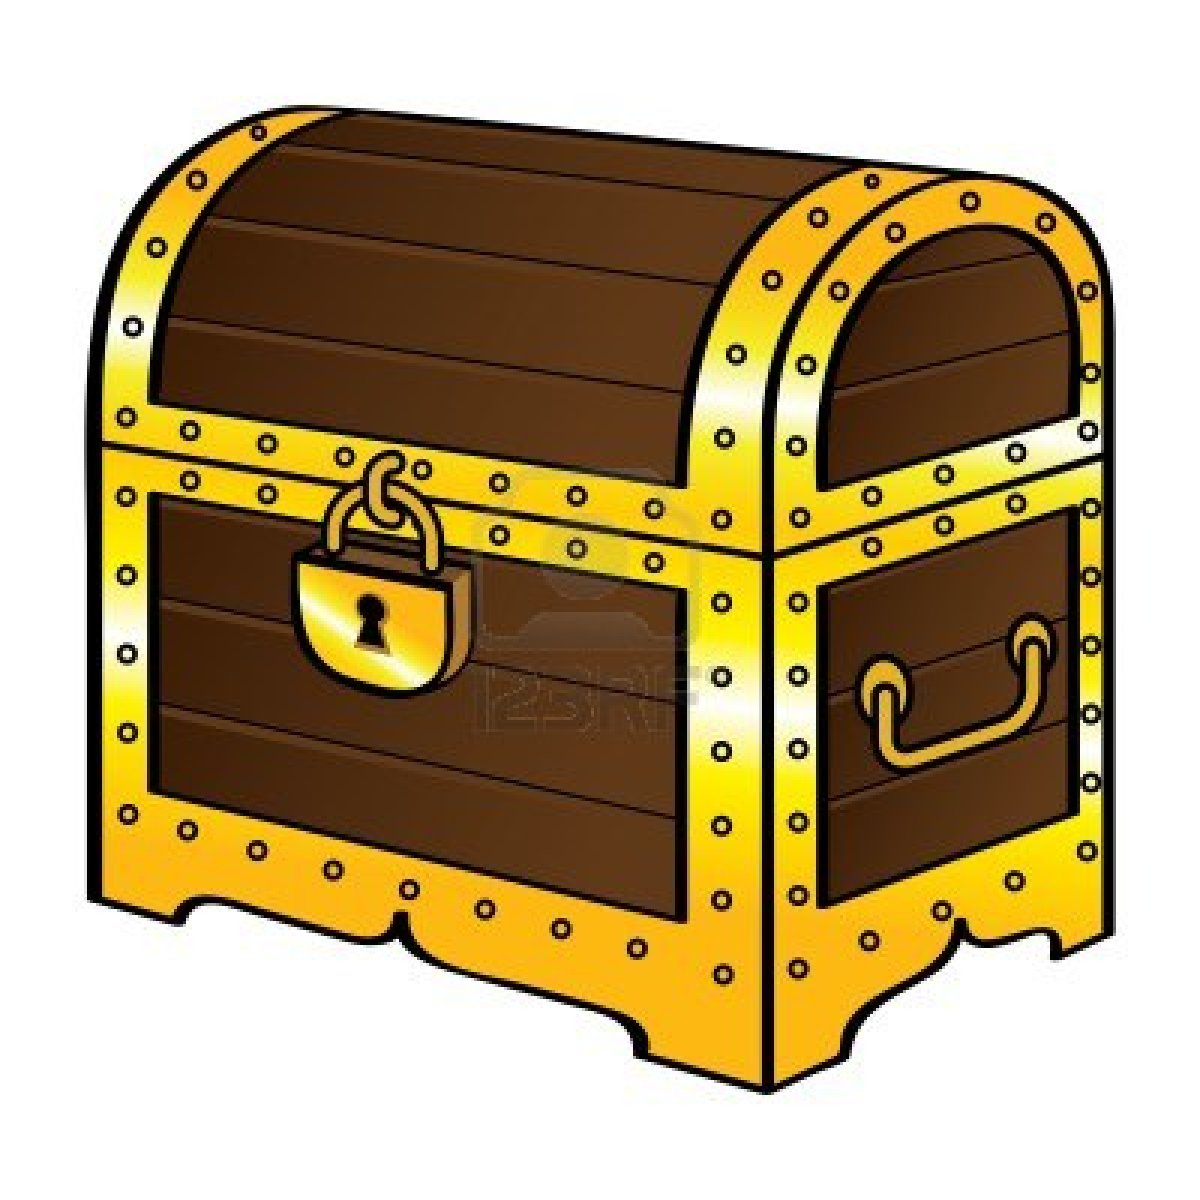 Treasure chest clip art vector treasure chest graphics image